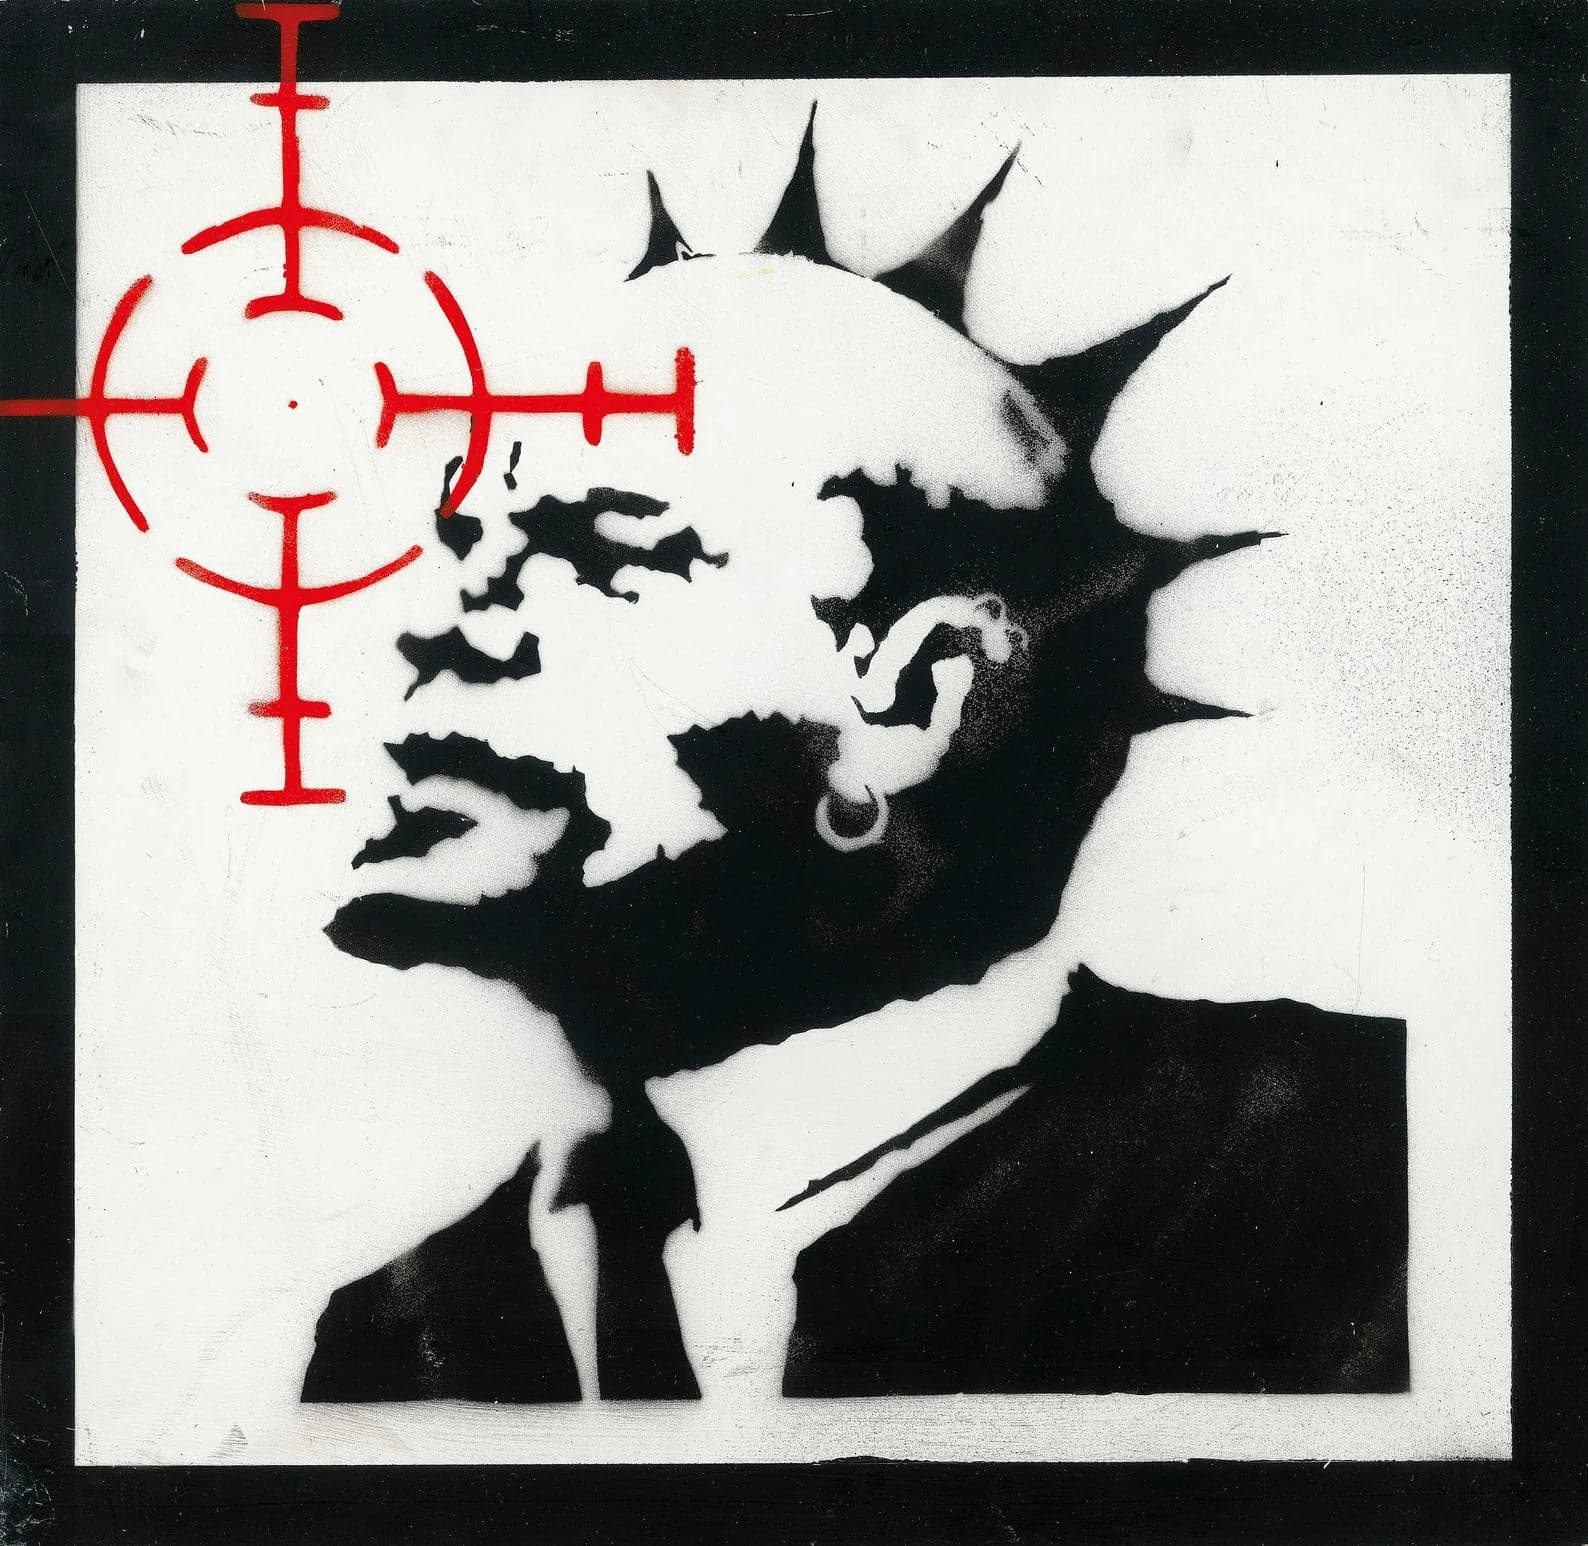 Framed 1 Panel - Banksy - Lenin in Sight High